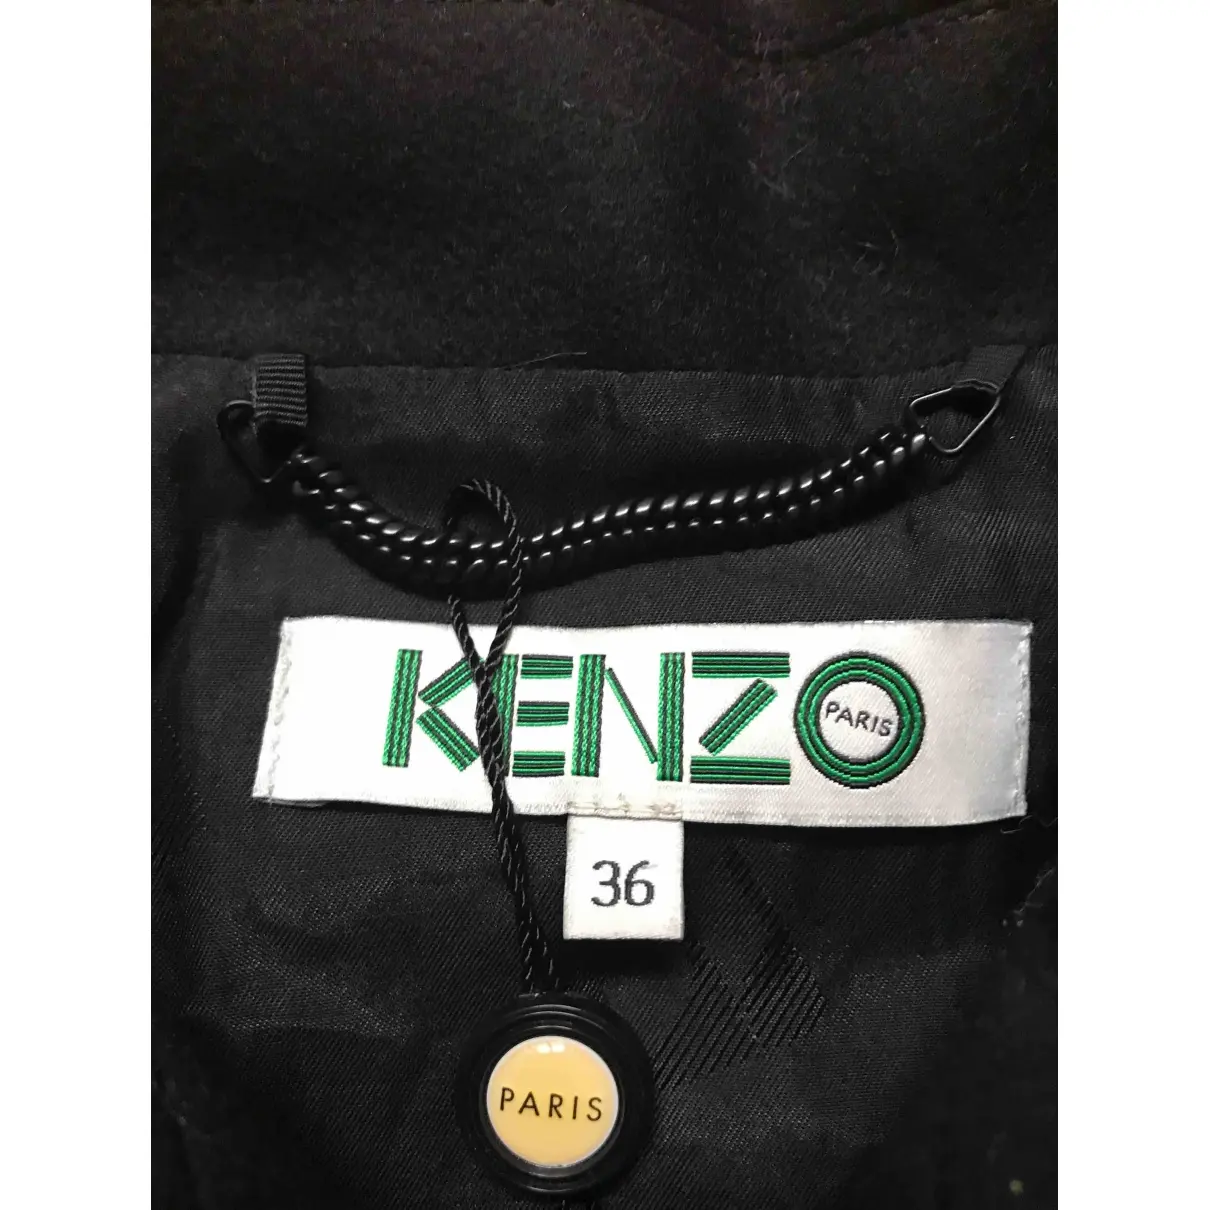 Buy Kenzo Biker jacket online